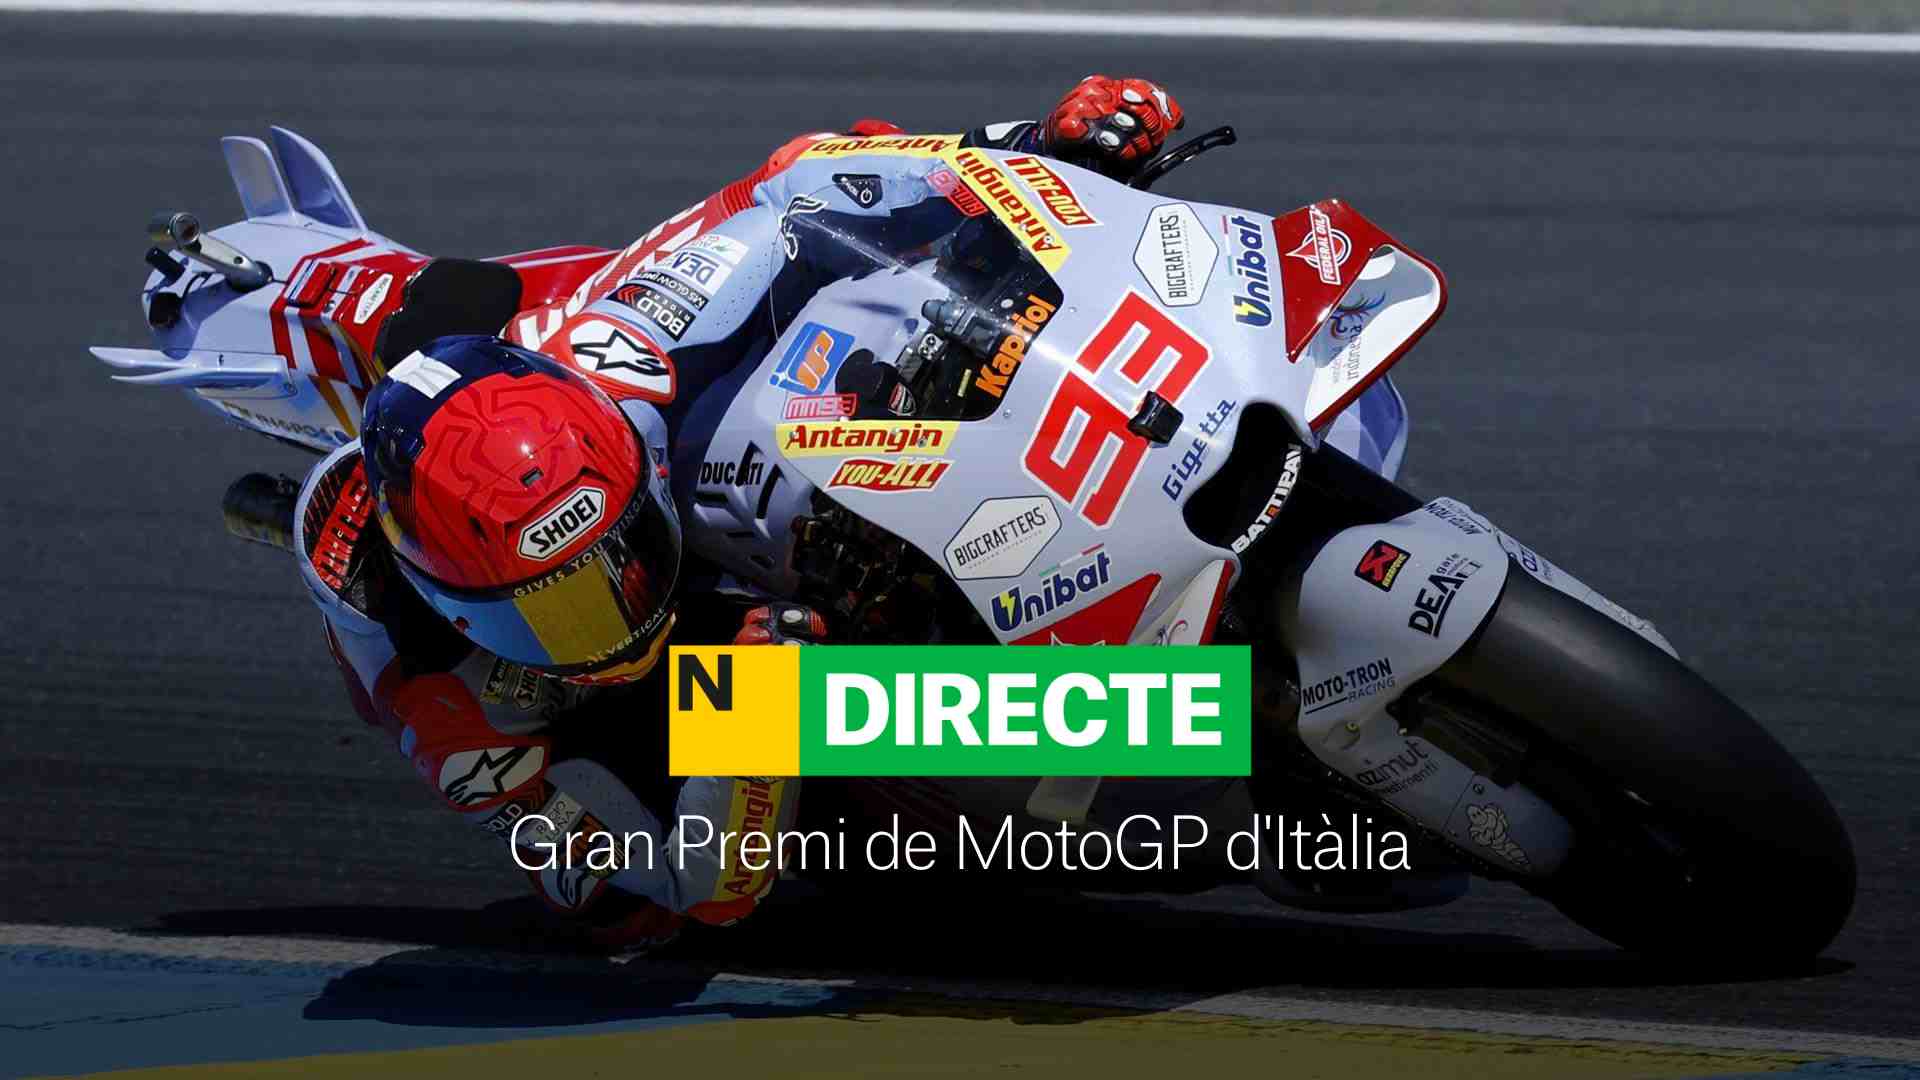 Gran Premio de MotoGP de Italia, DIRECTO | Resultado y resumen